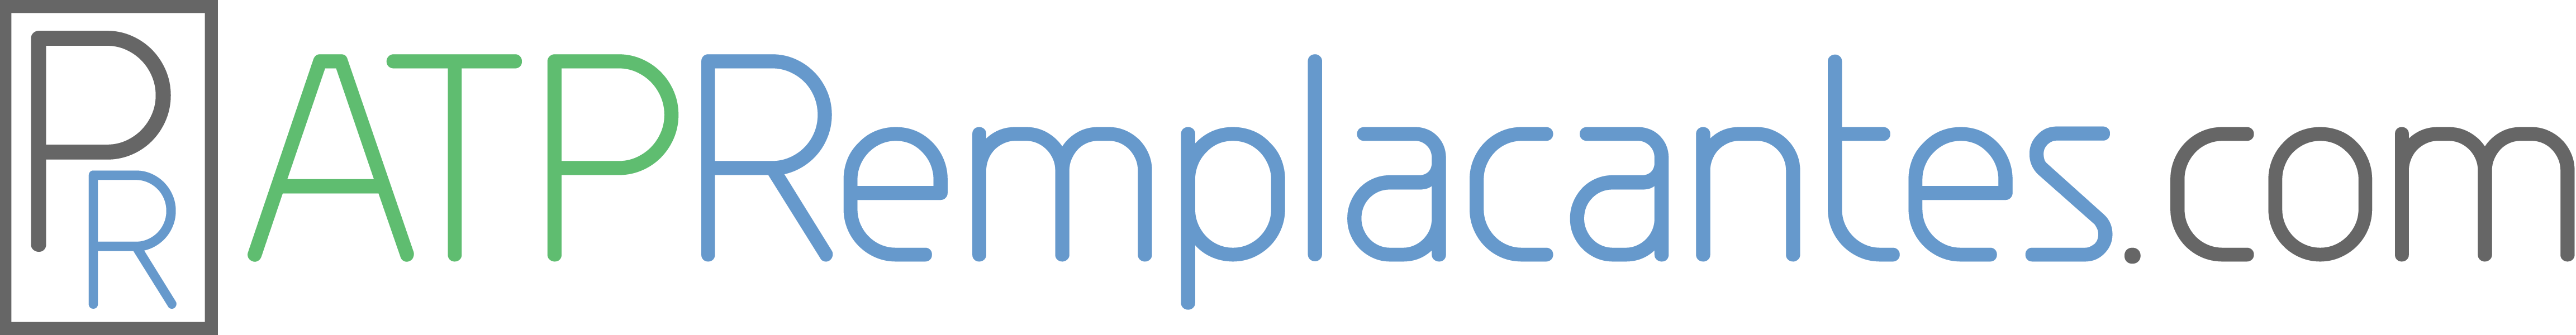 ATPRemplacantes.com logo